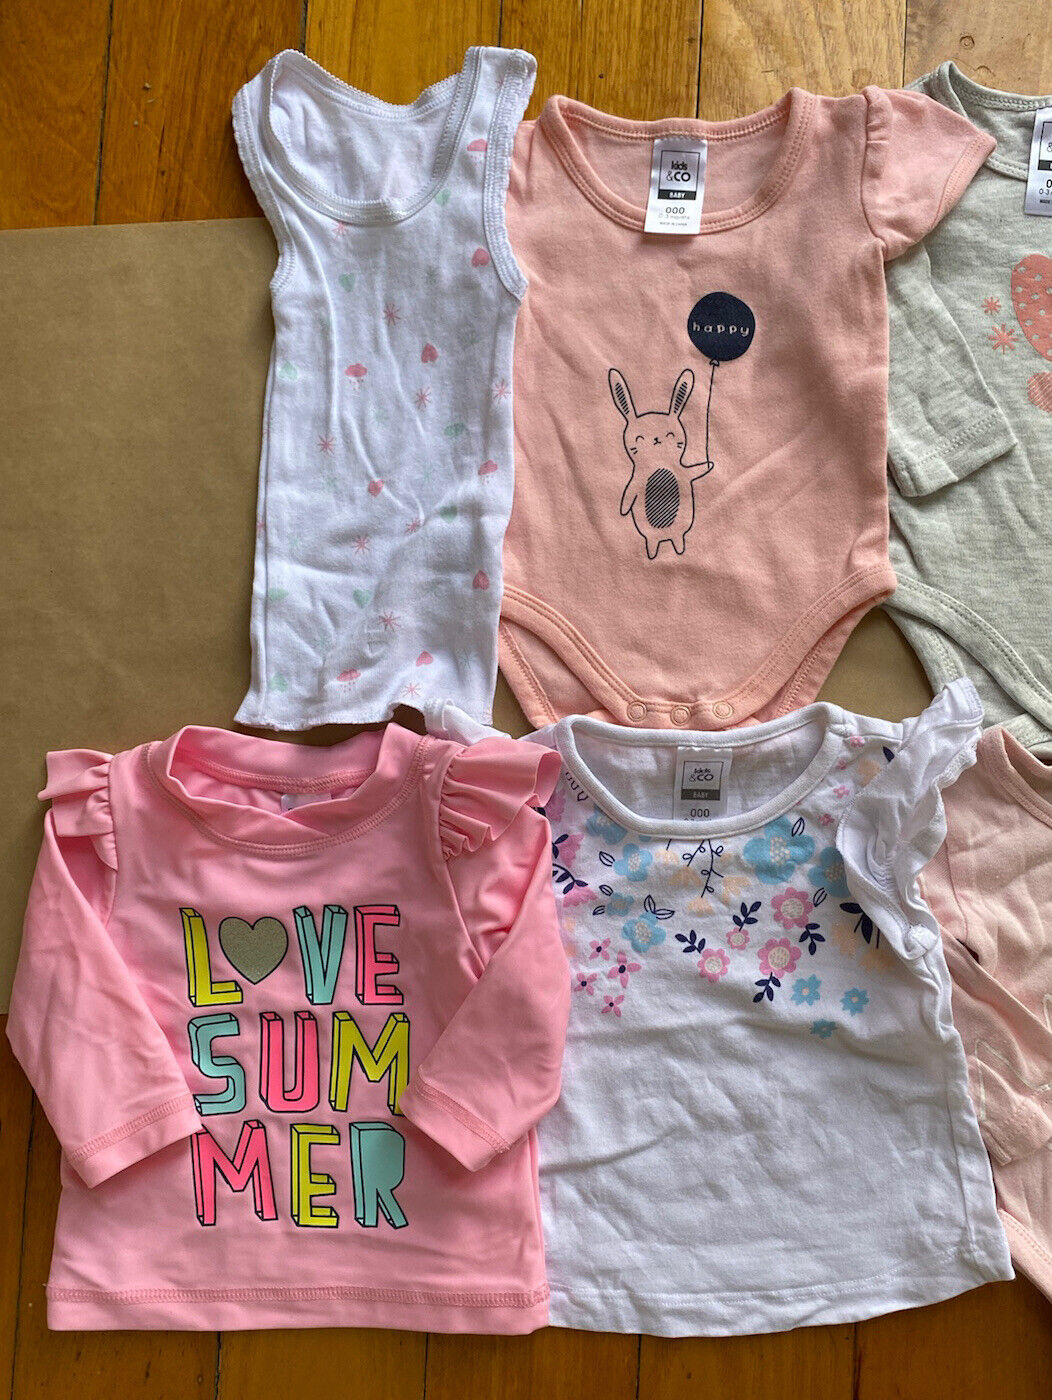 skibsbygning film Genre Kids & Co baby girl size 0-3 months bundle Summer pink grey t-shirts,